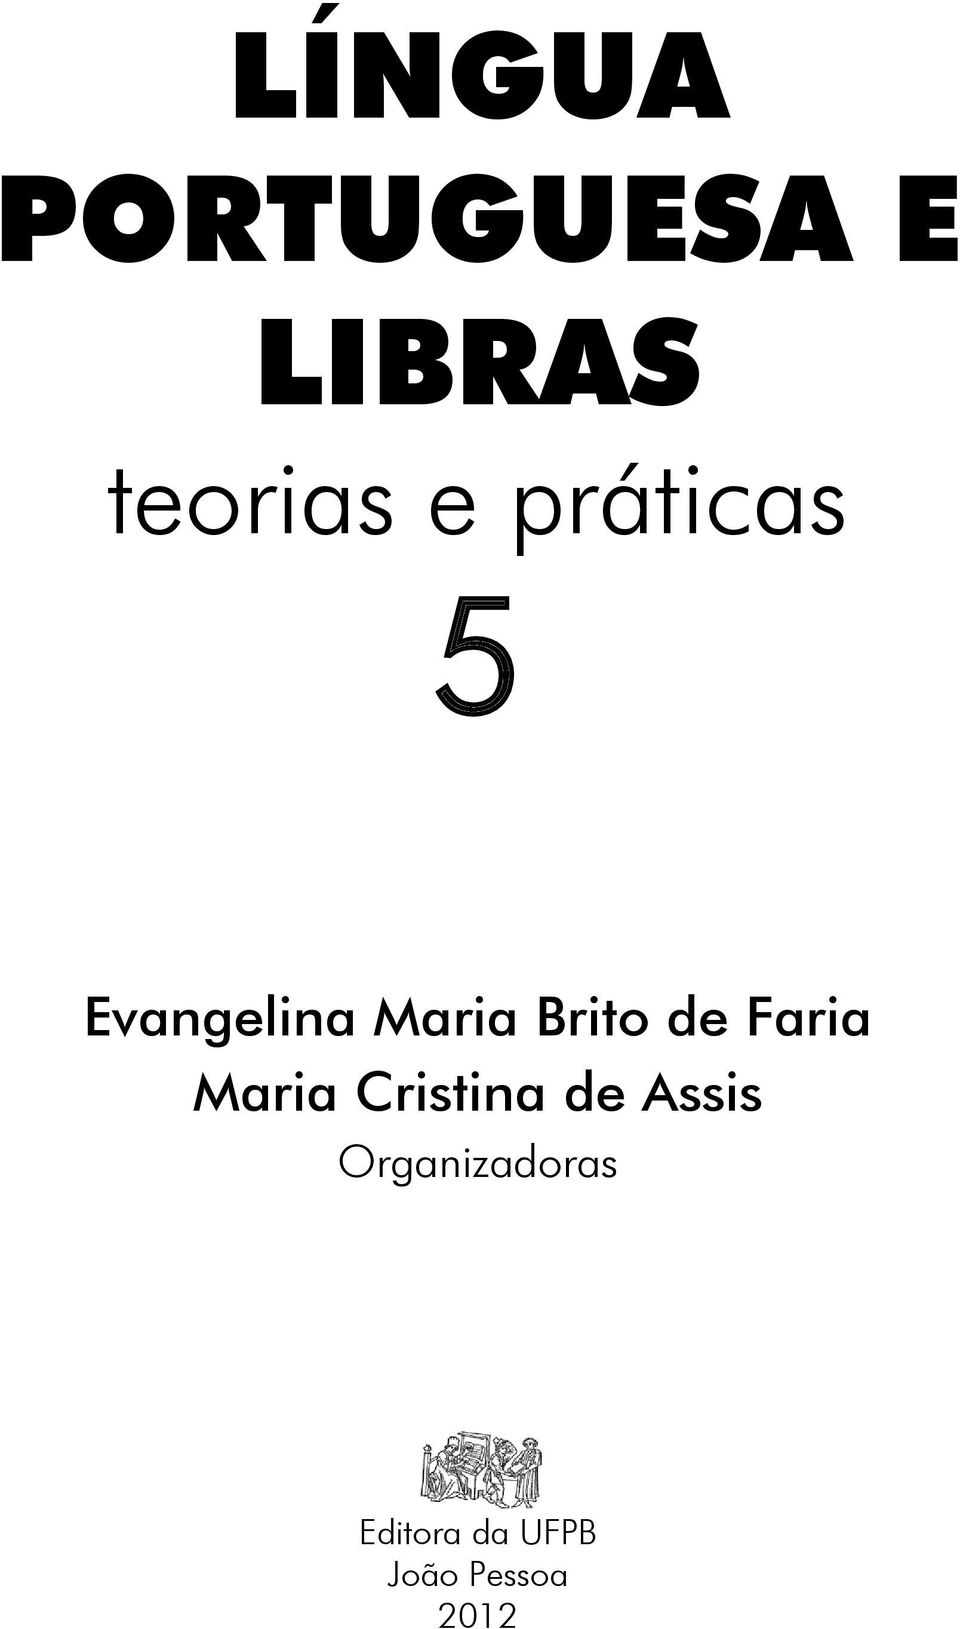 Faria Maria Cristina de Assis